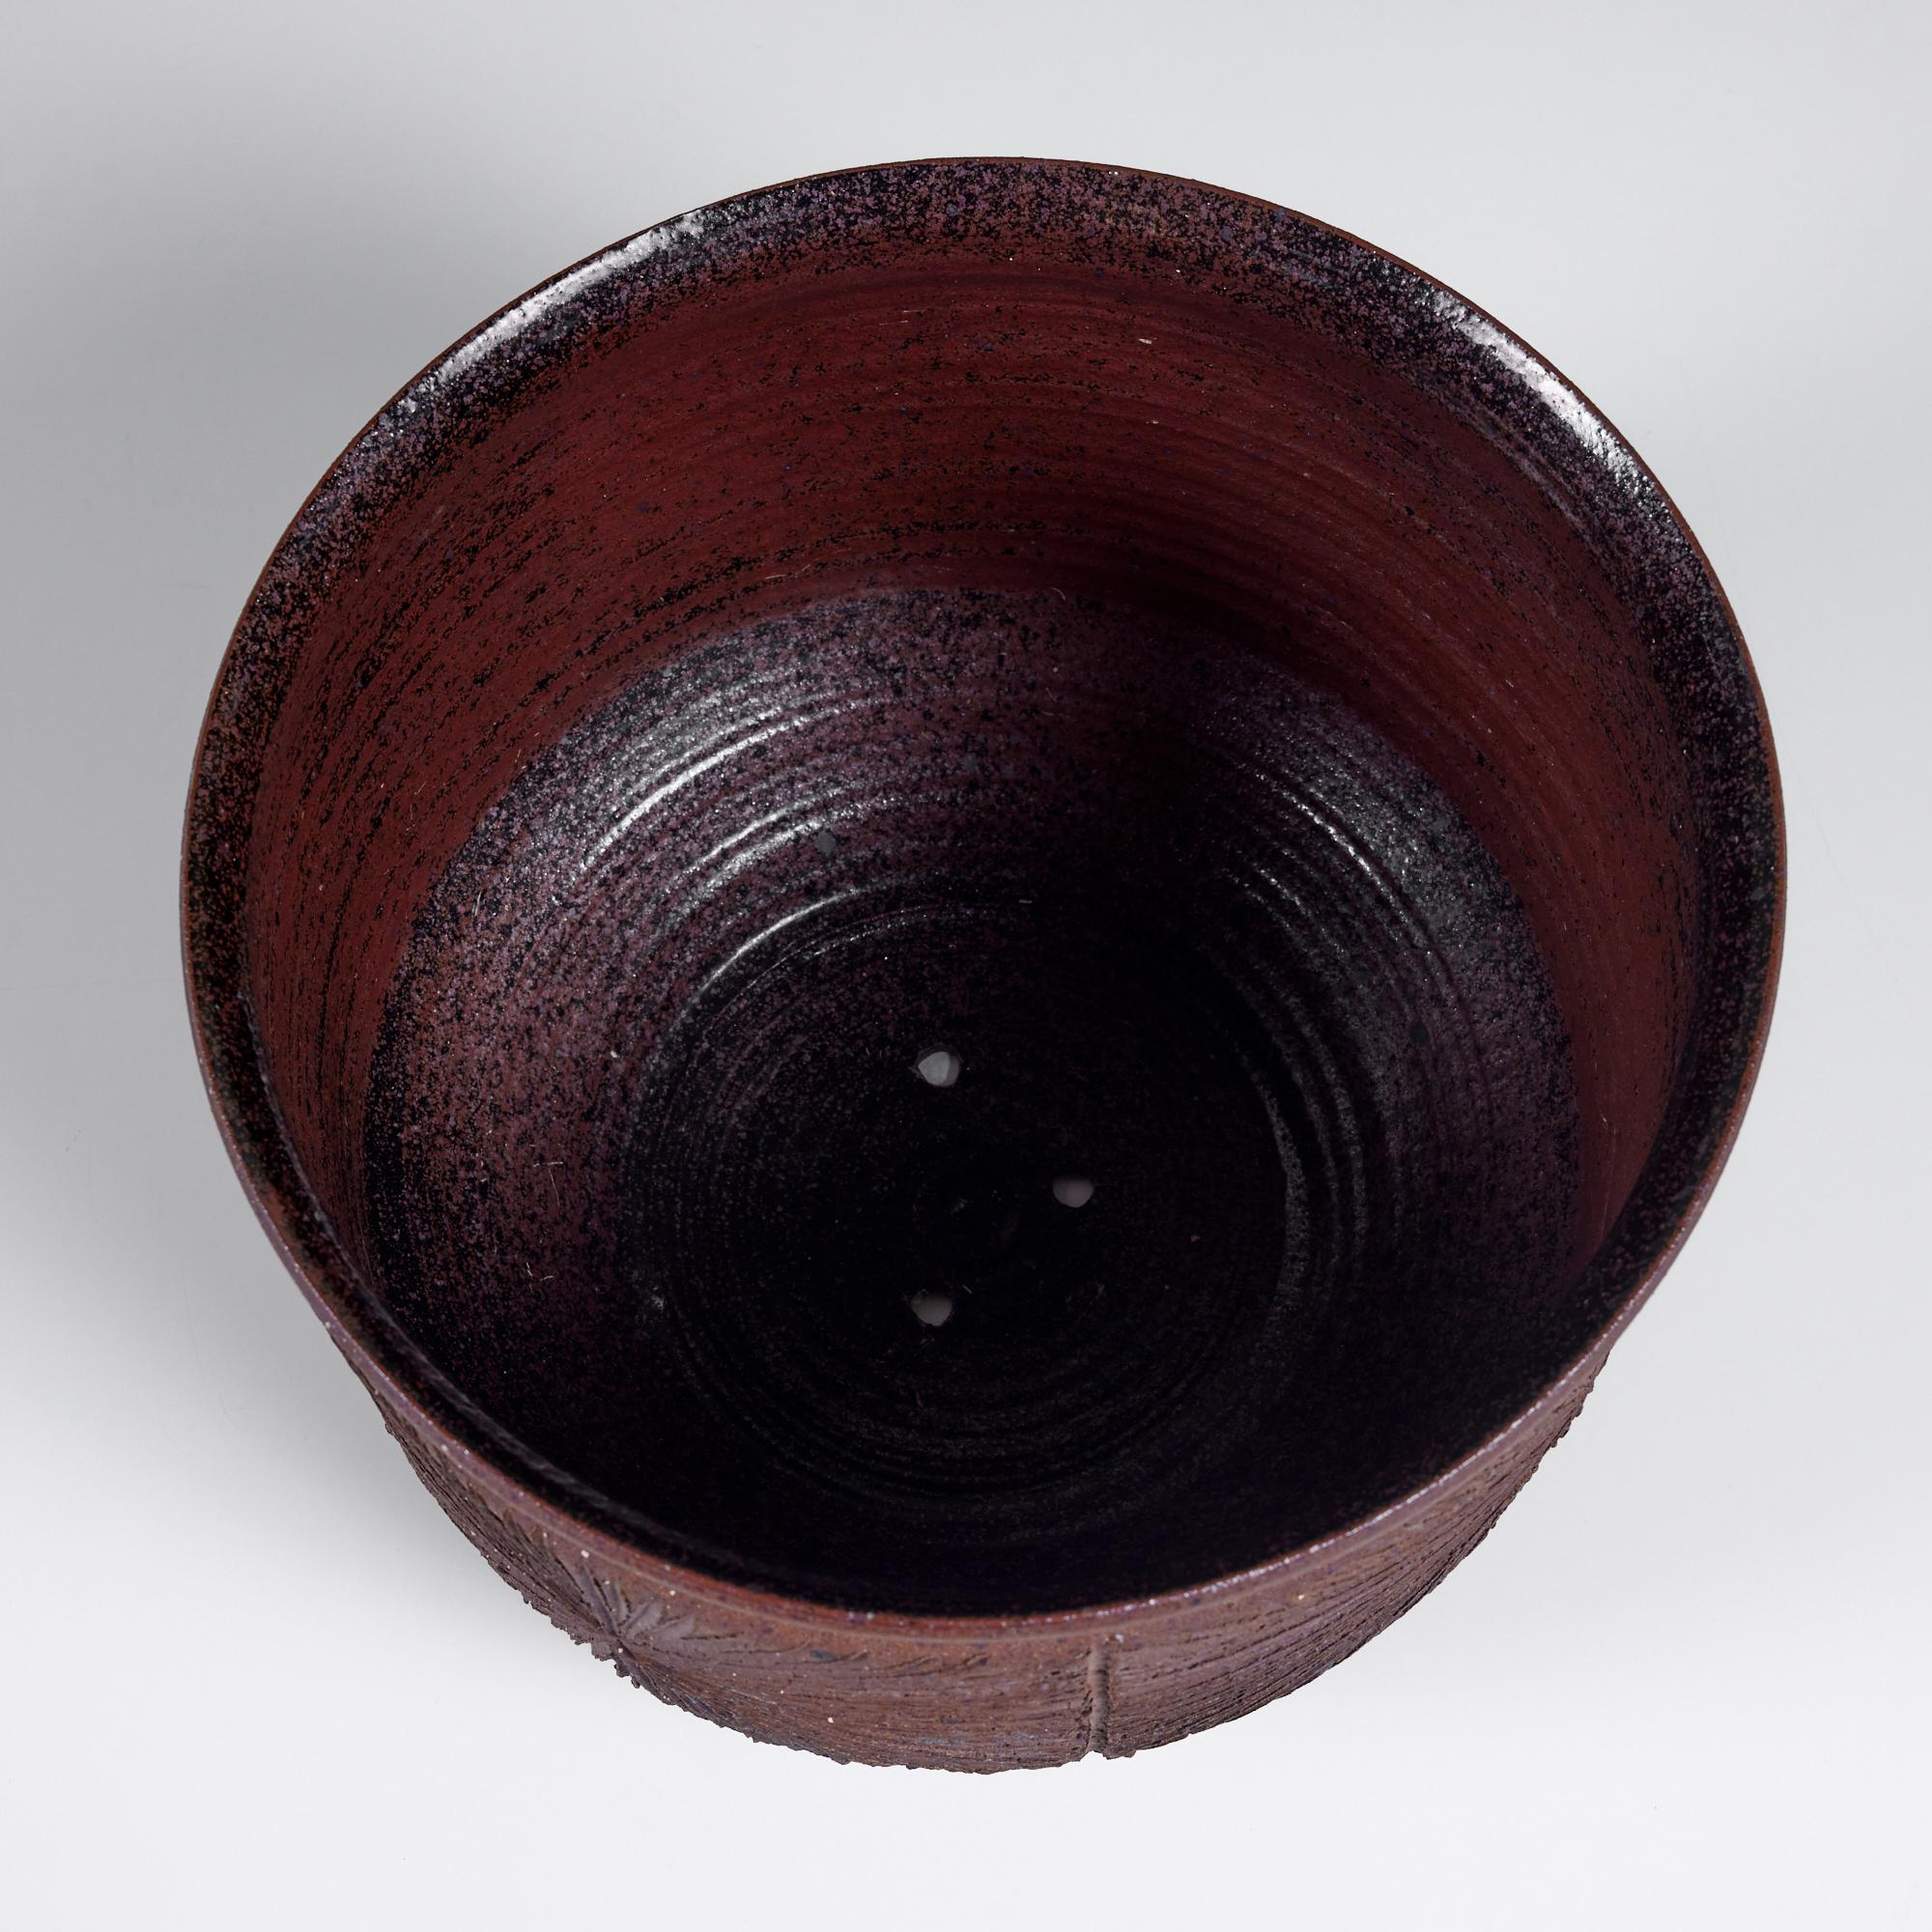 Glazed David Cressey & Robert Maxwell Stoneware “Sunburst” Bowl Planter for Earthgender For Sale